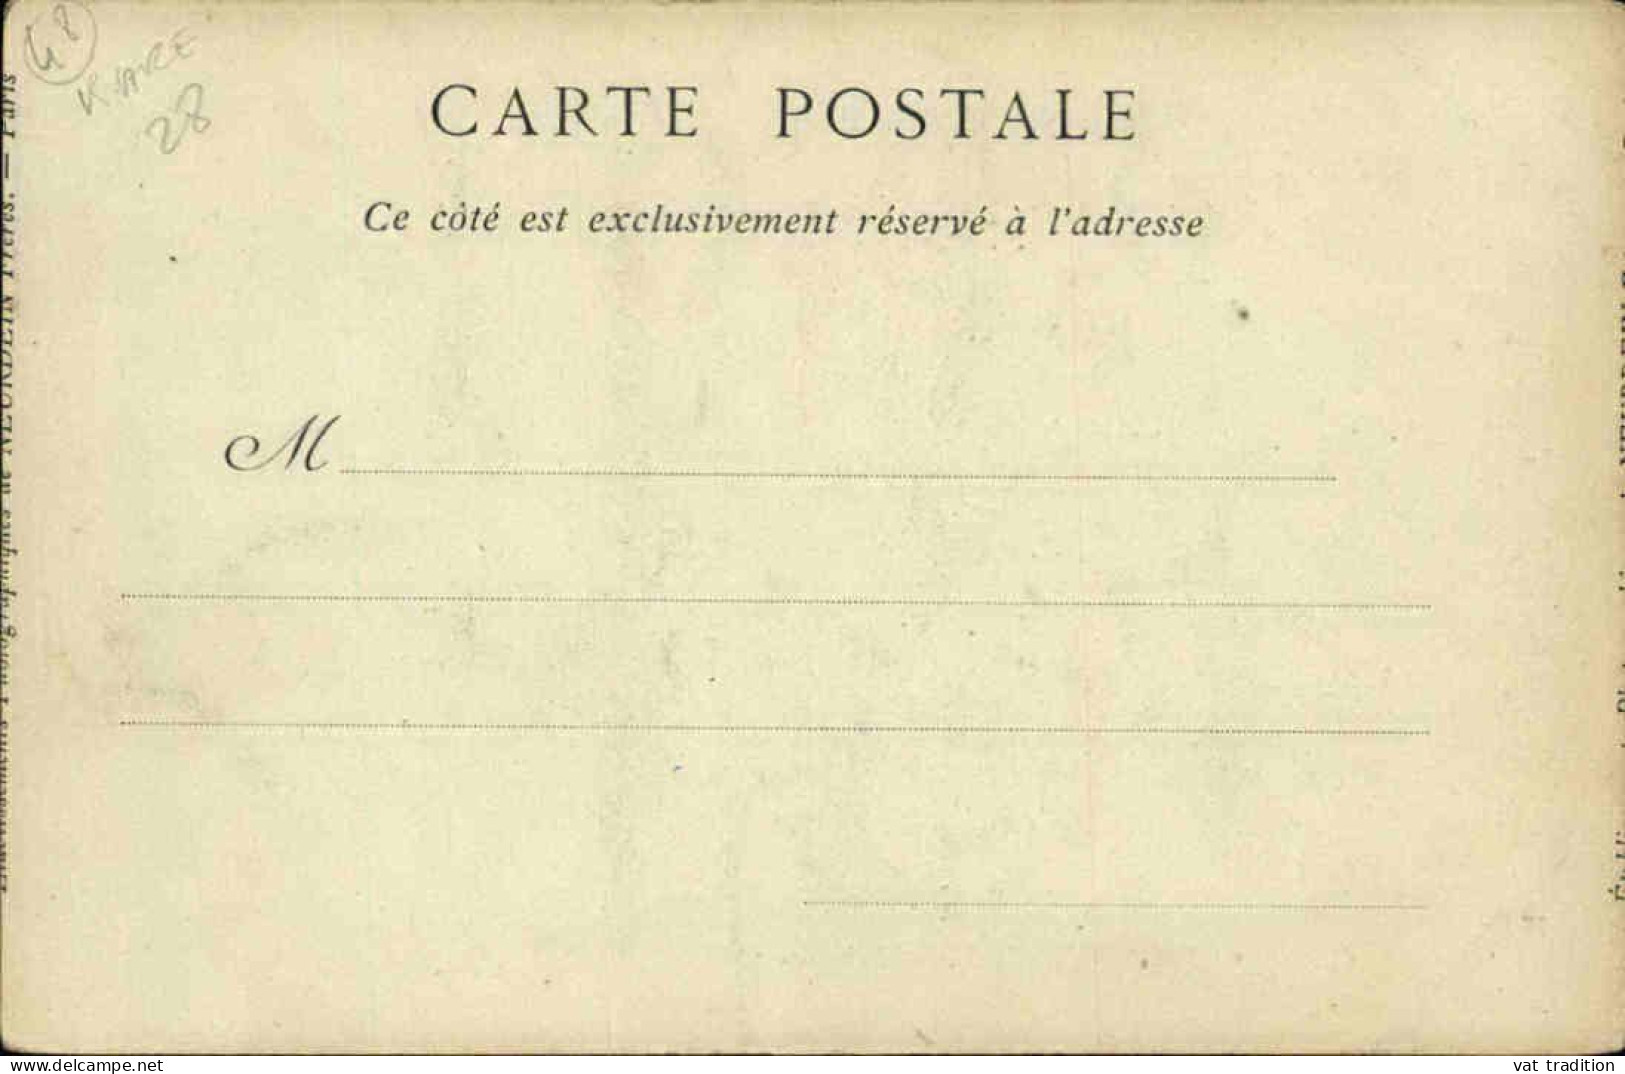 AGRICULTURE - Carte Postale - Causse De Sauveterre - Laboureurs - L 152325 - Landwirtschaftl. Anbau